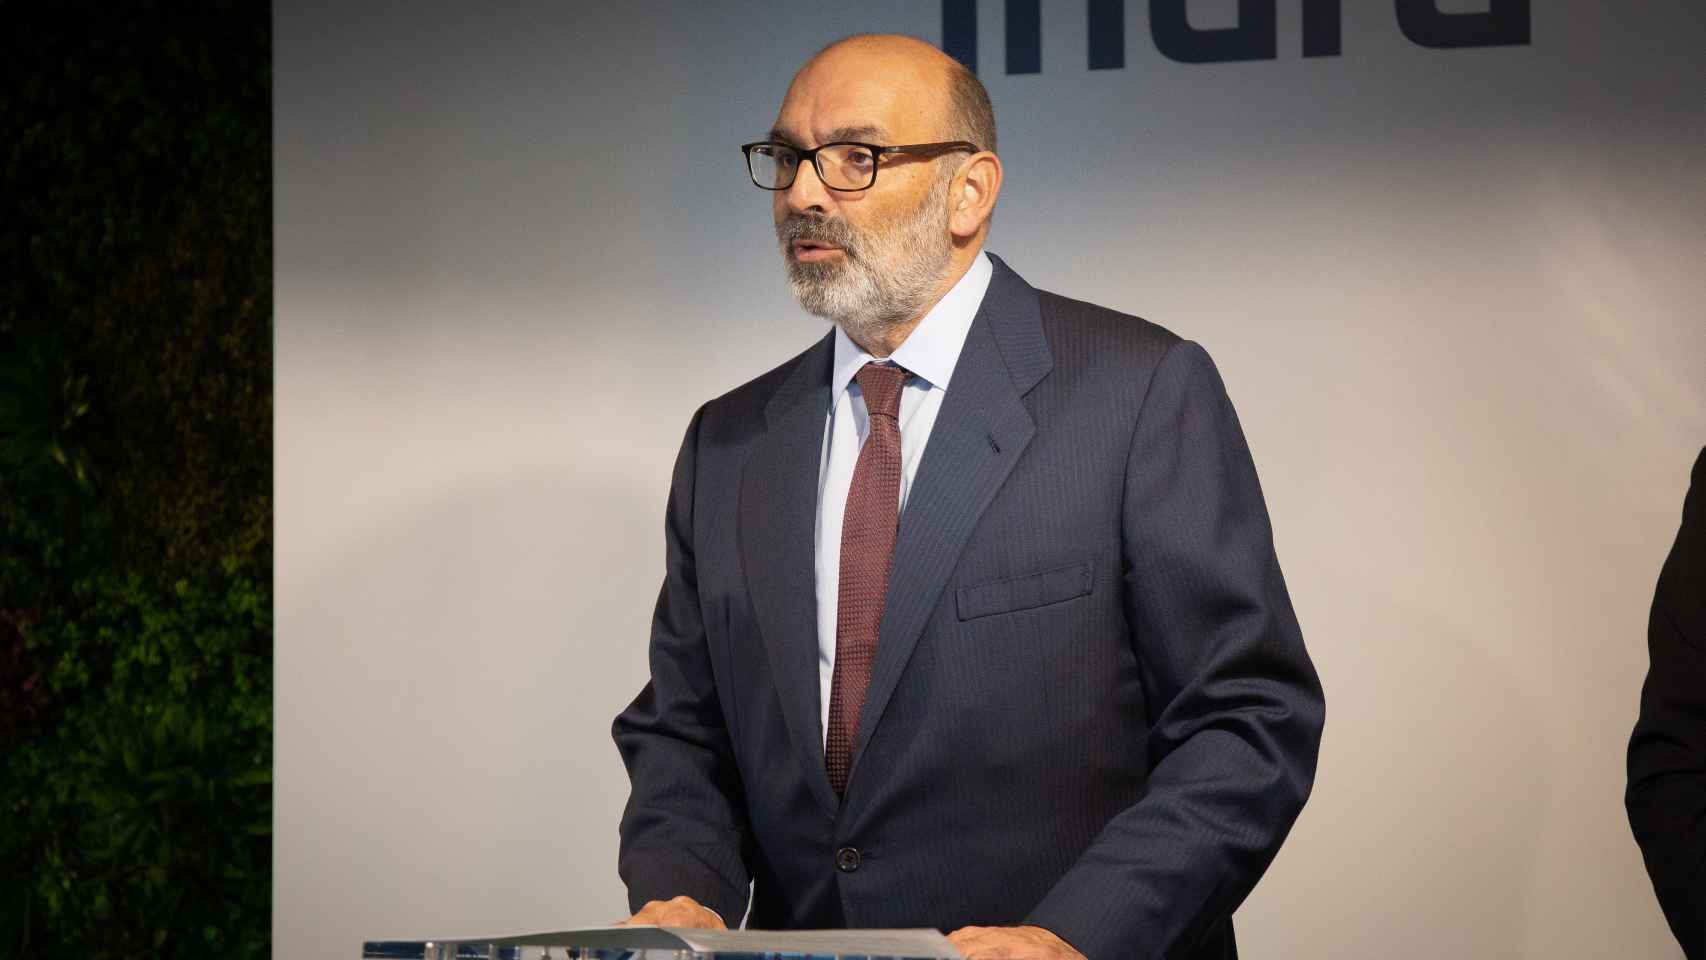 El presidente de Indra, Fernando Abril – Martorell, durante la inauguración de un centro tecnológico en la localidad barcelonesa de Sant Joan Despí.